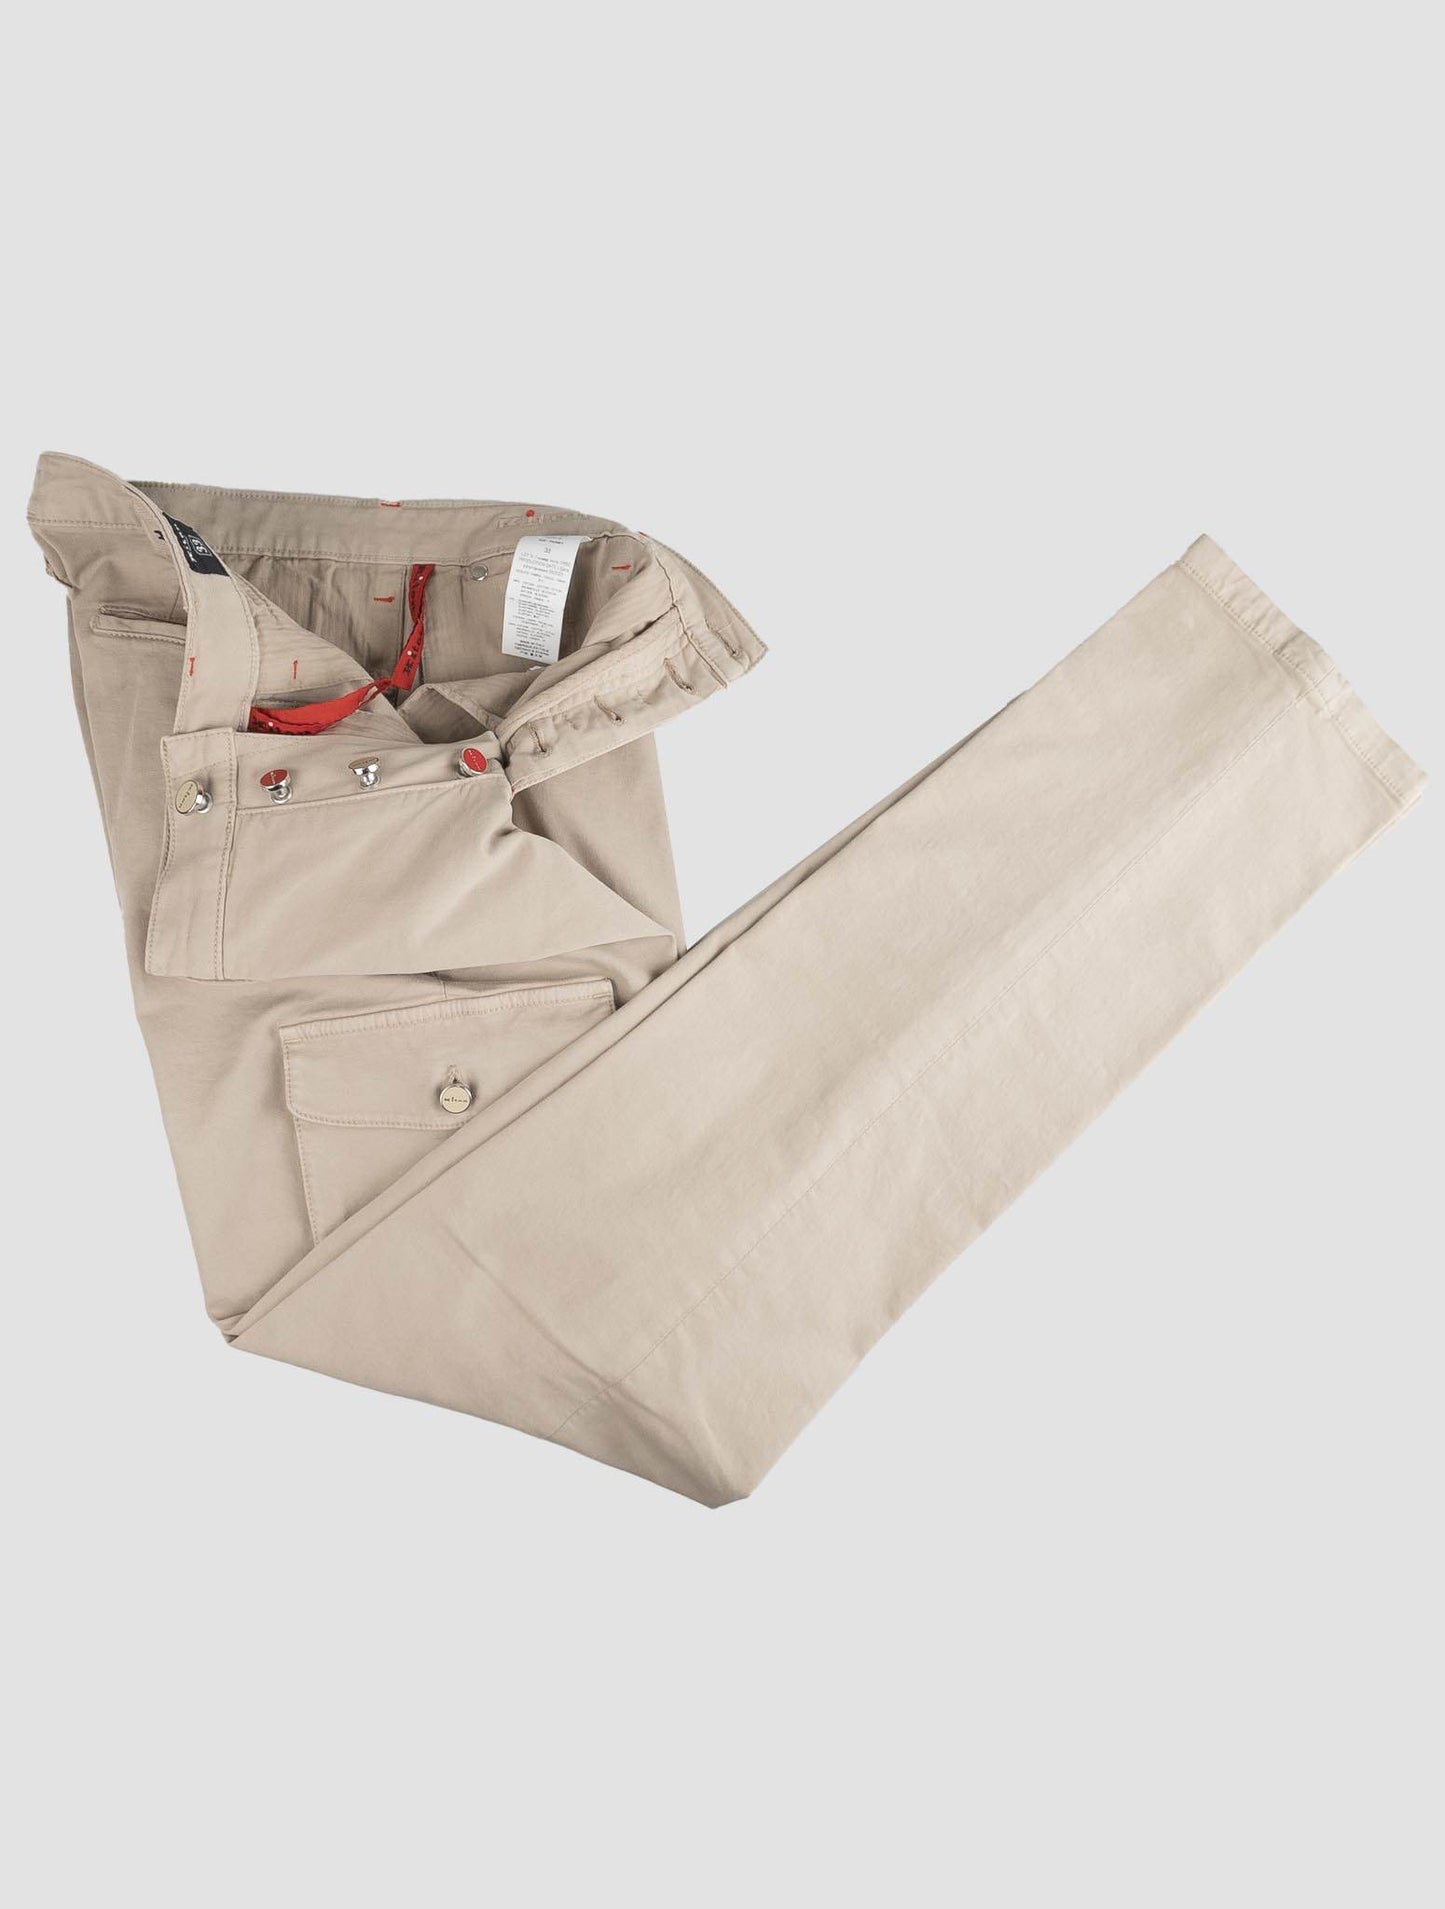 Kiton Beige Cotton Ea Cargo Pants